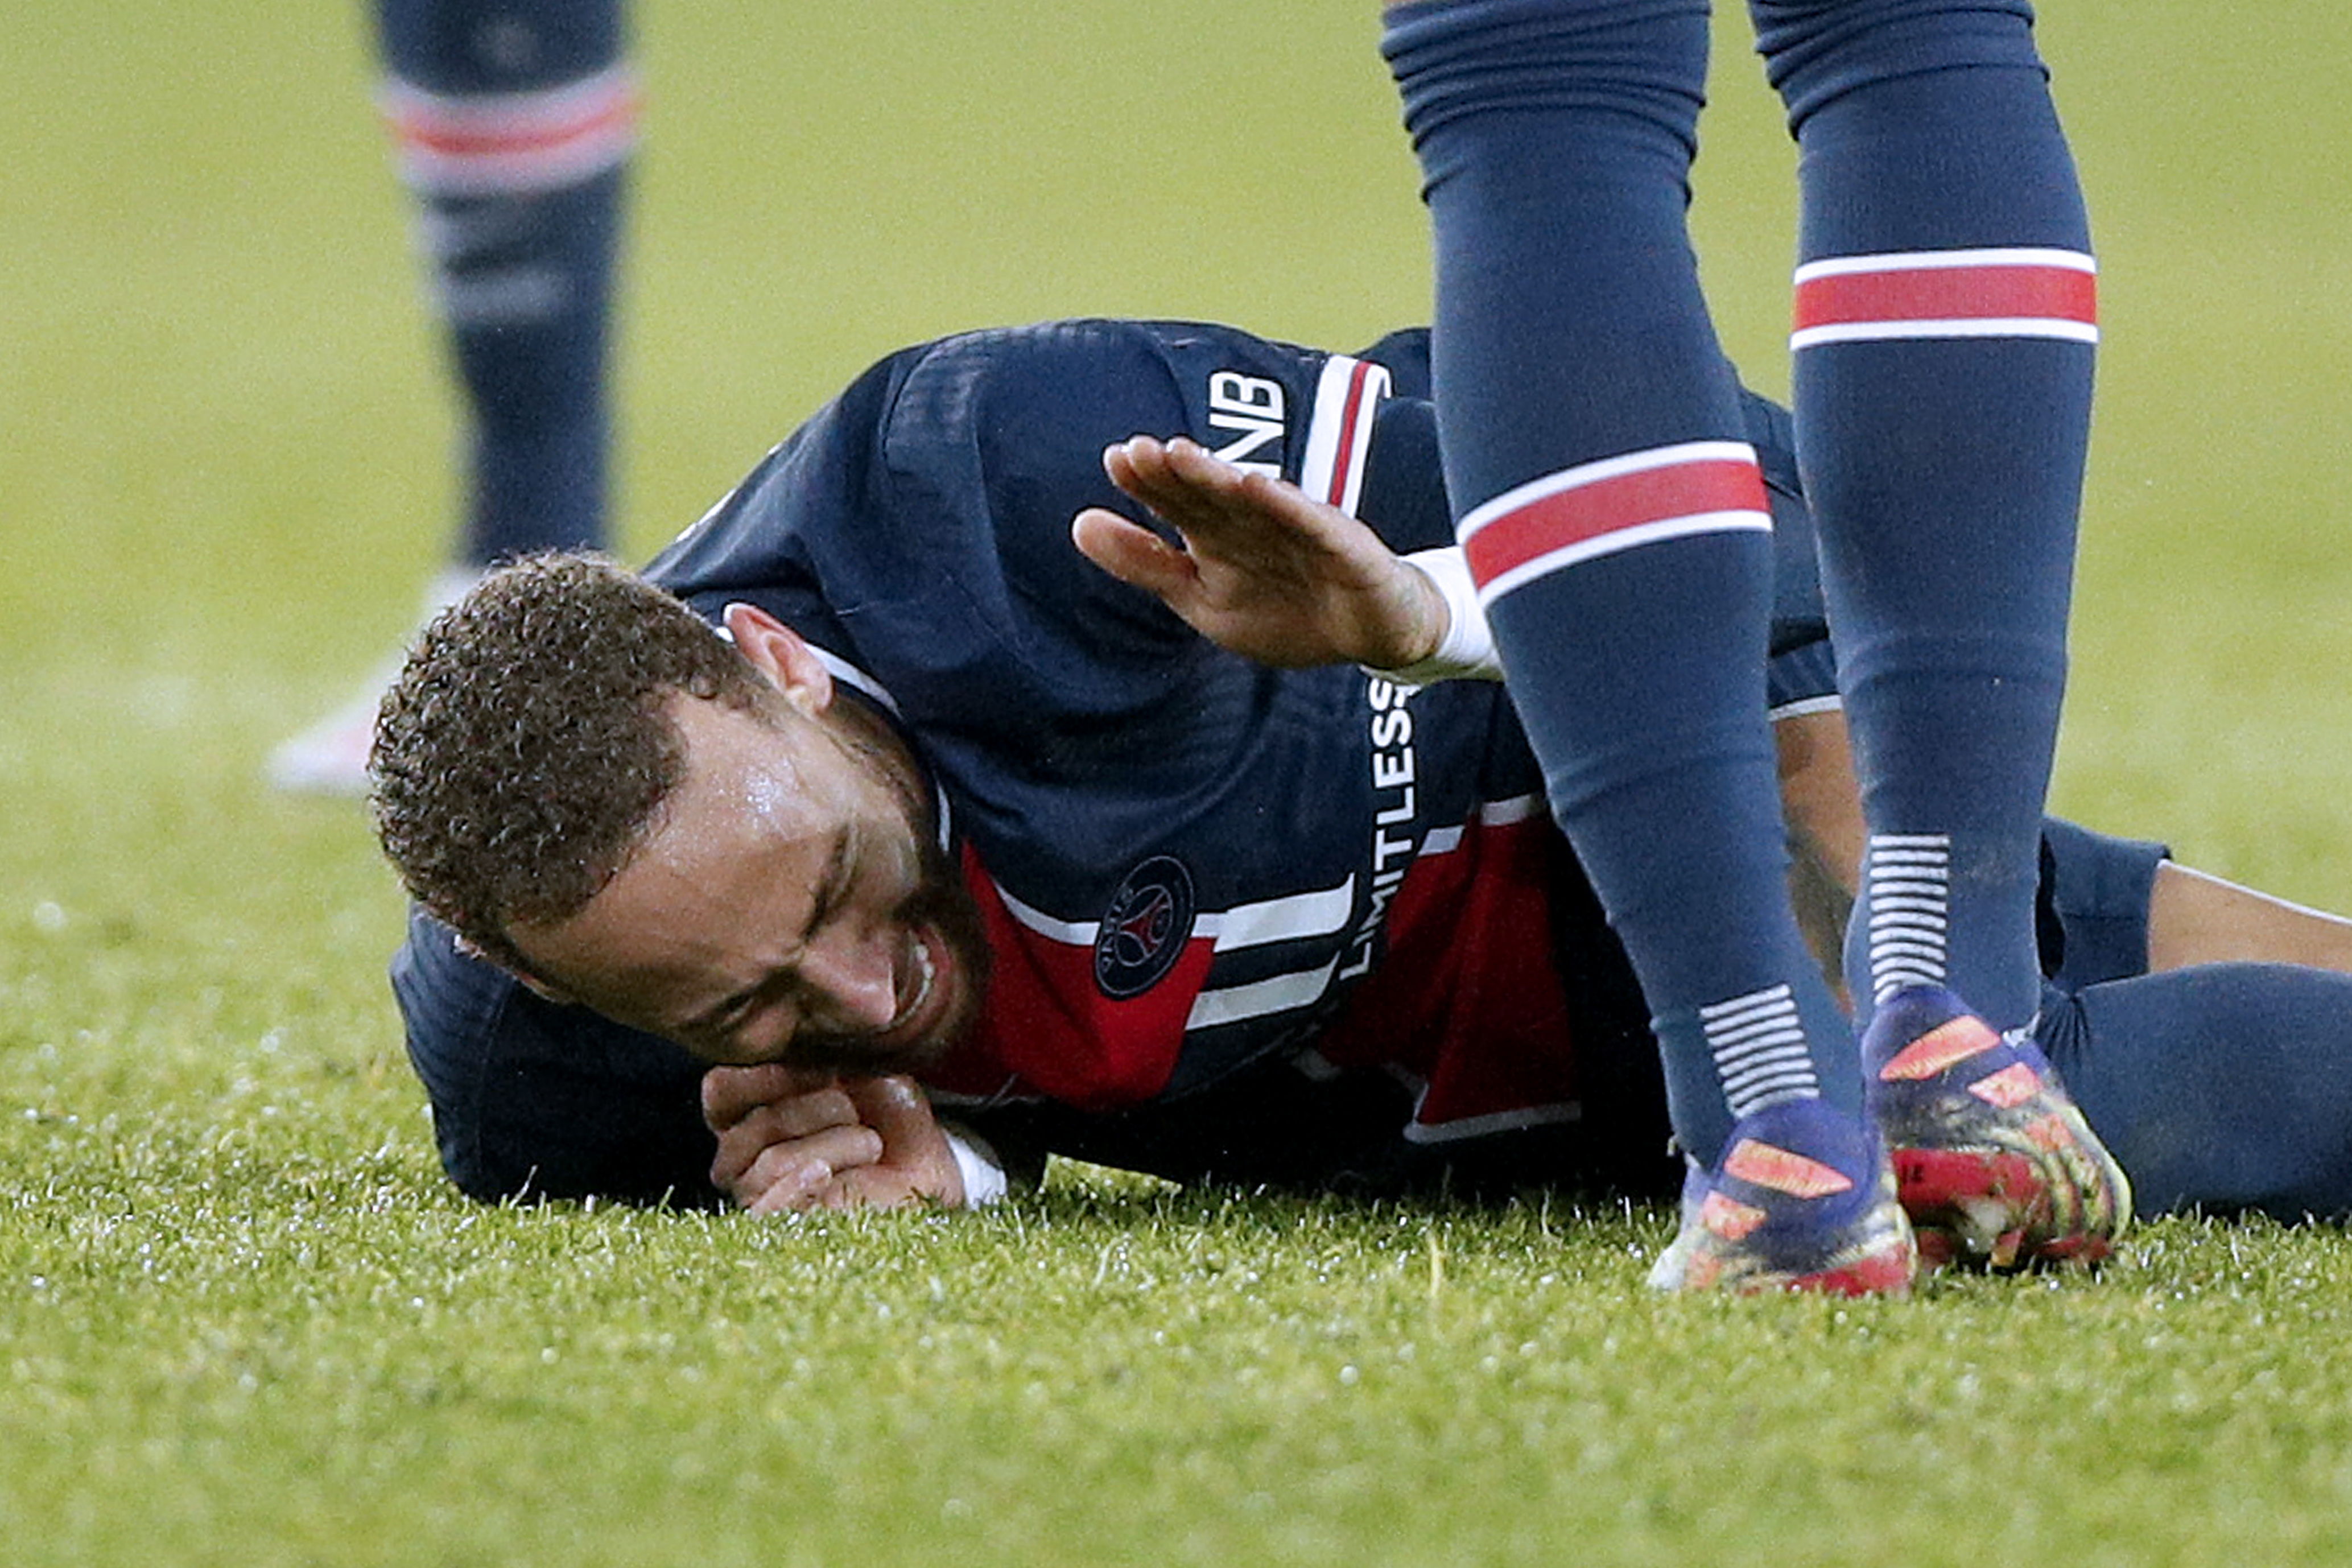 Todavía se espera el parte médico sobre la situación del tobillo de Neymar luego que este sufriera una entrada que lo obligó a salir en camilla en el juego entre el PSG y el Lyon. (Foto Prensa Libre: EFE)